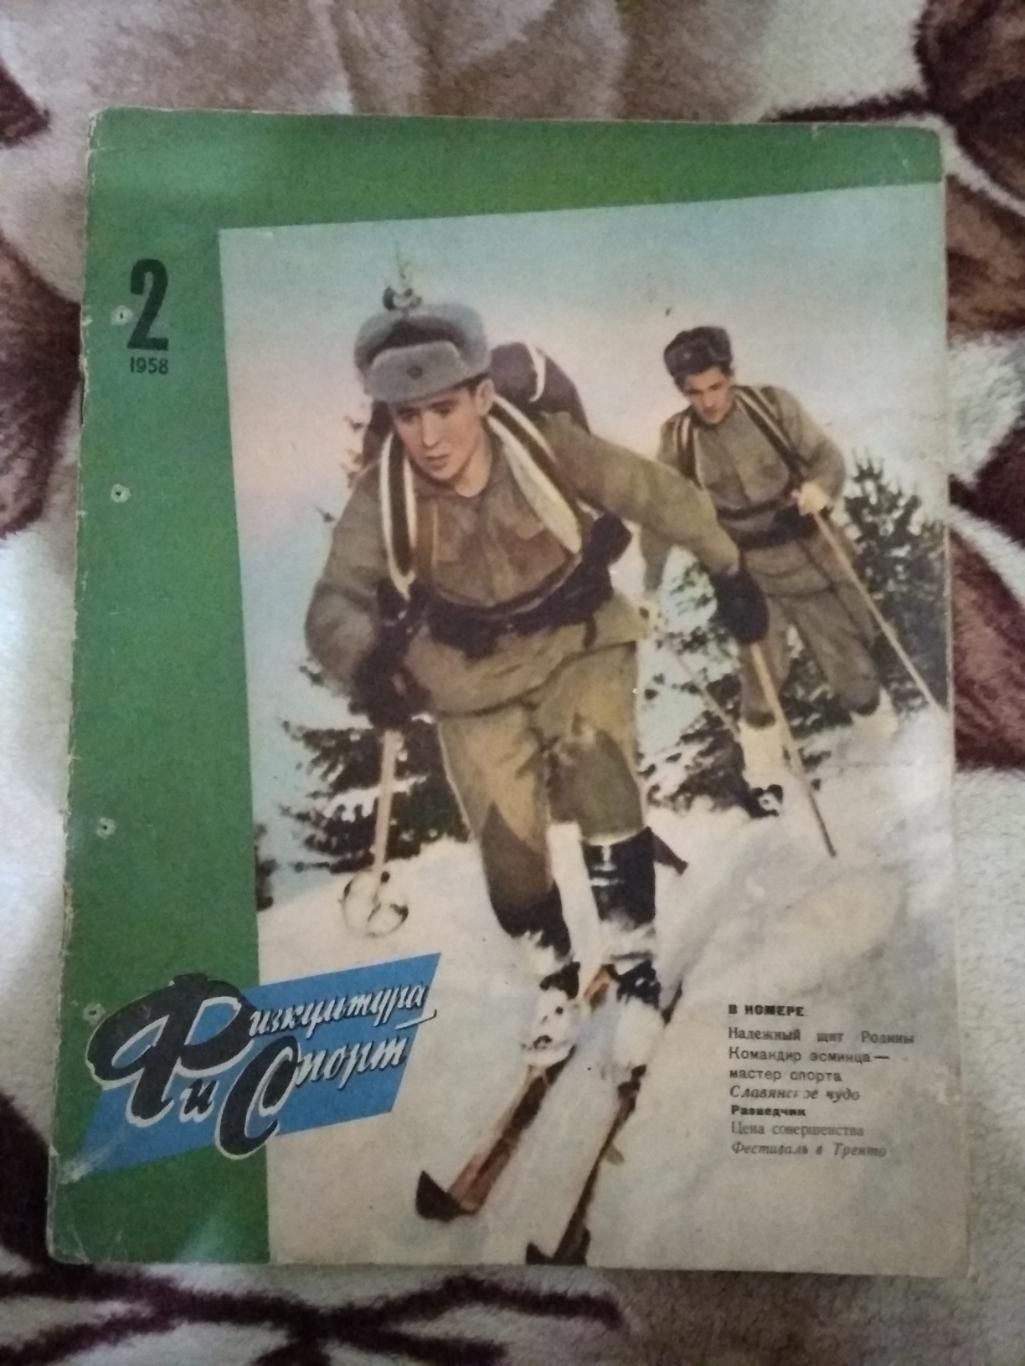 Журнал.Физкультура и спорт № 2 1958 г. (ФиС).